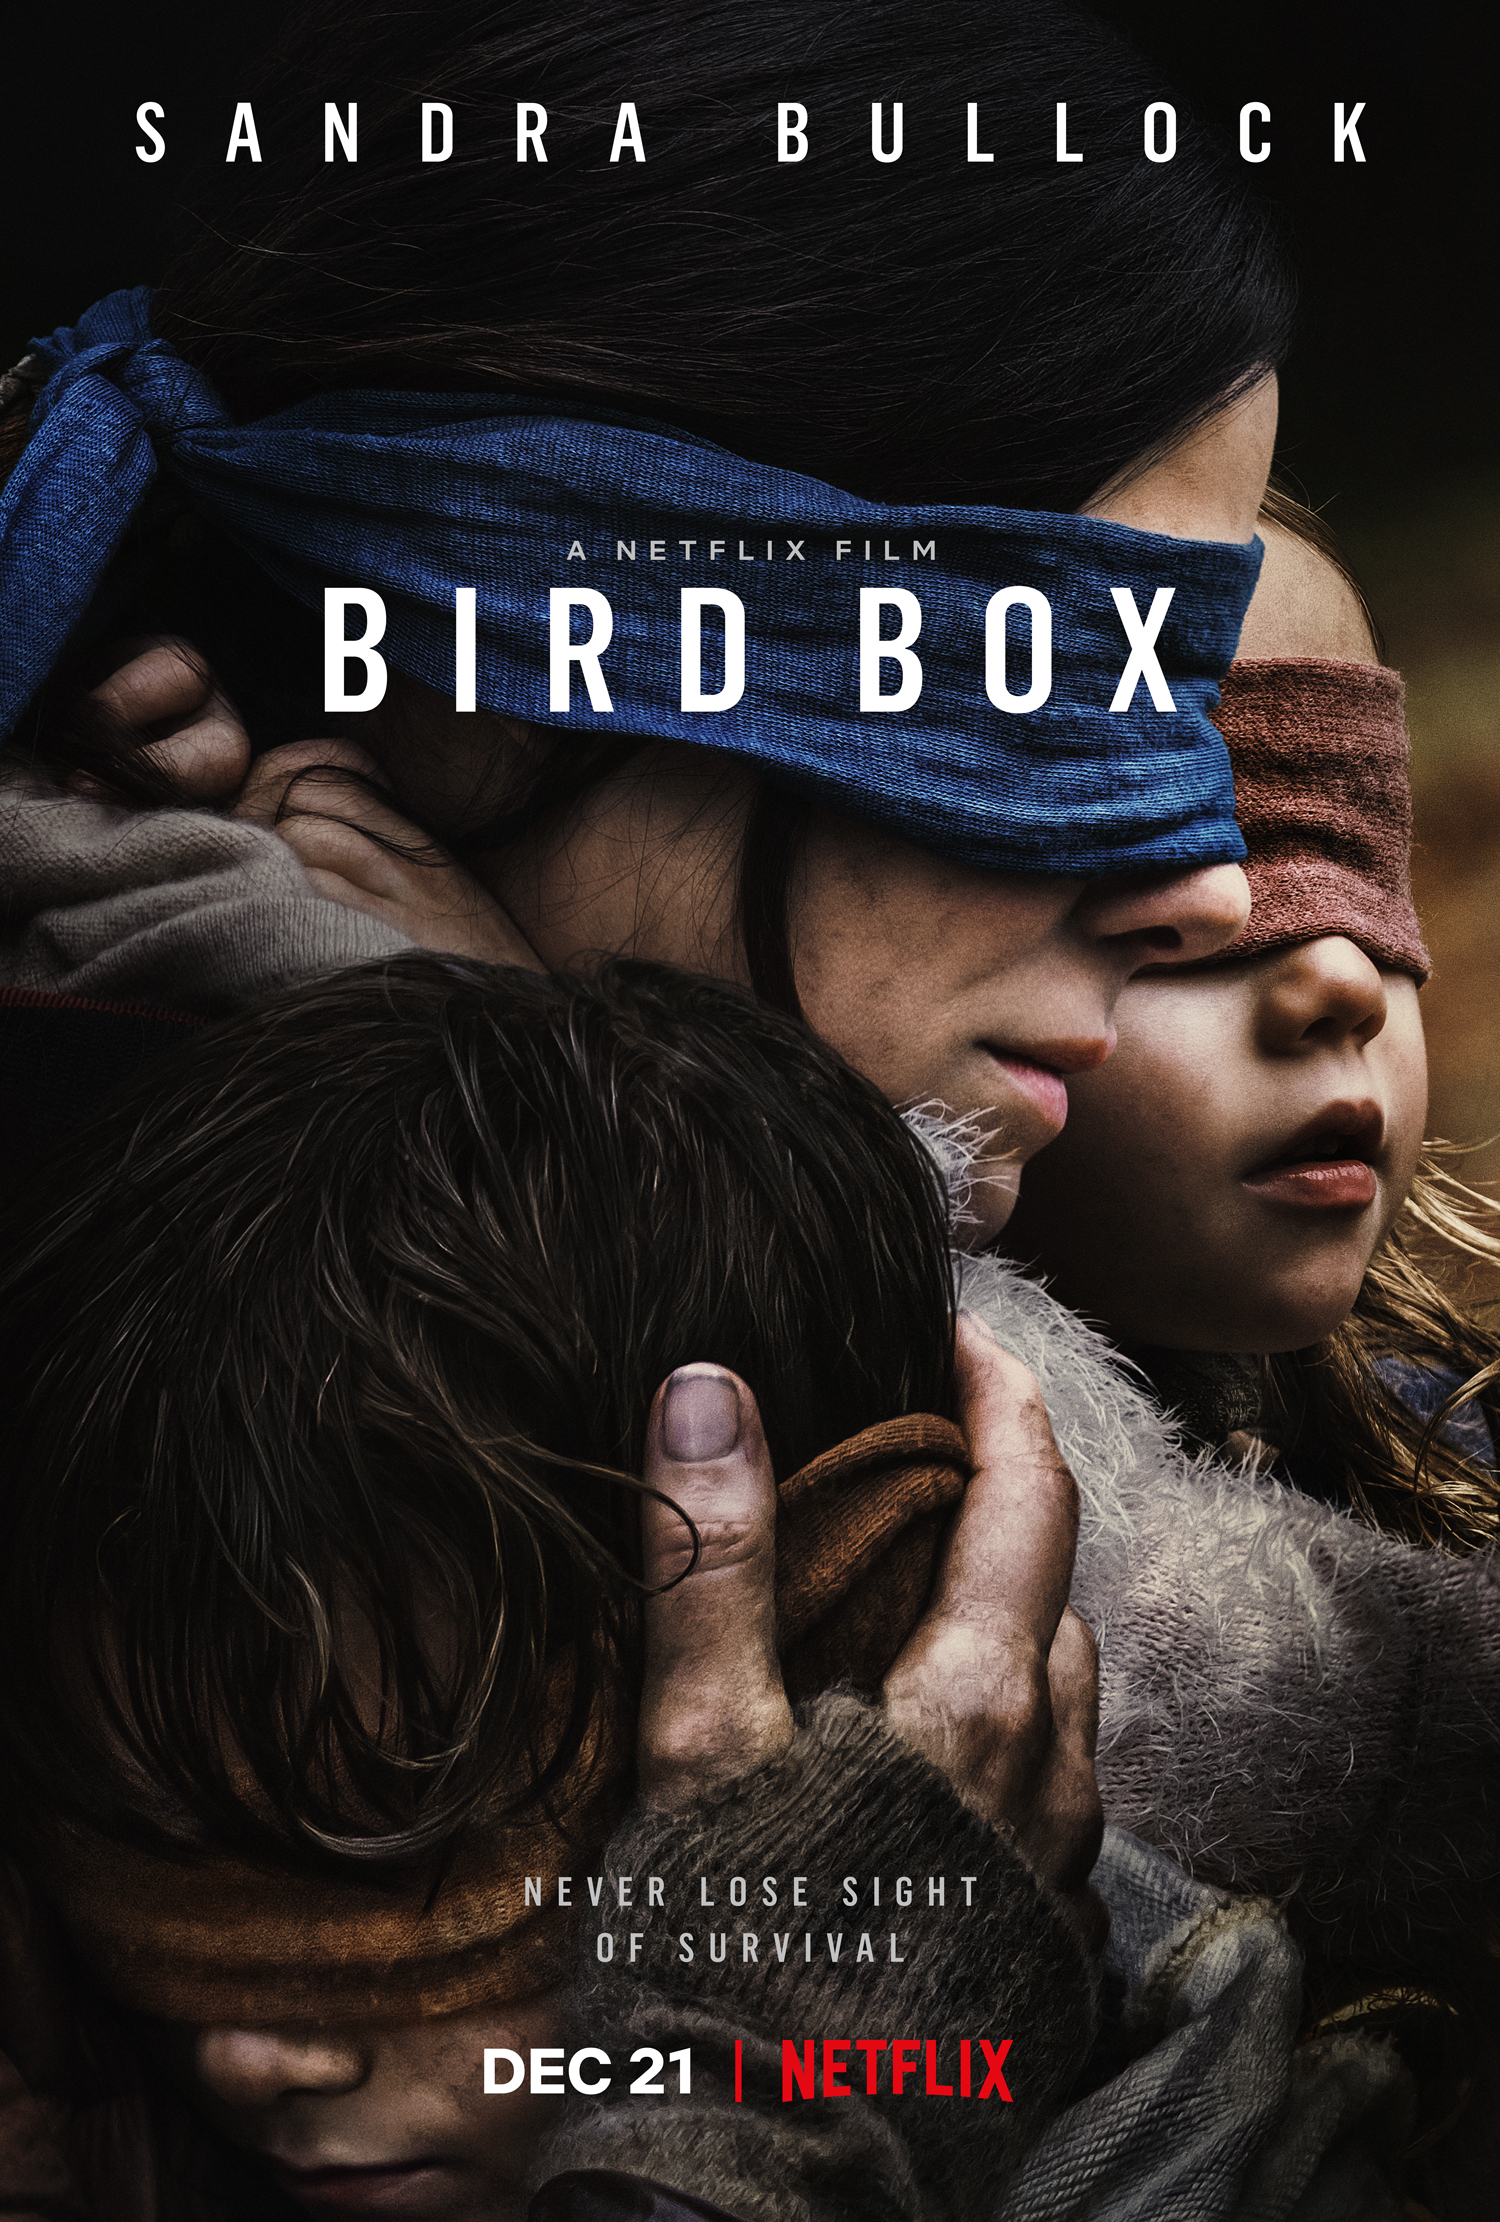 Sandra Bullock stars in new Netflix film Bird Box